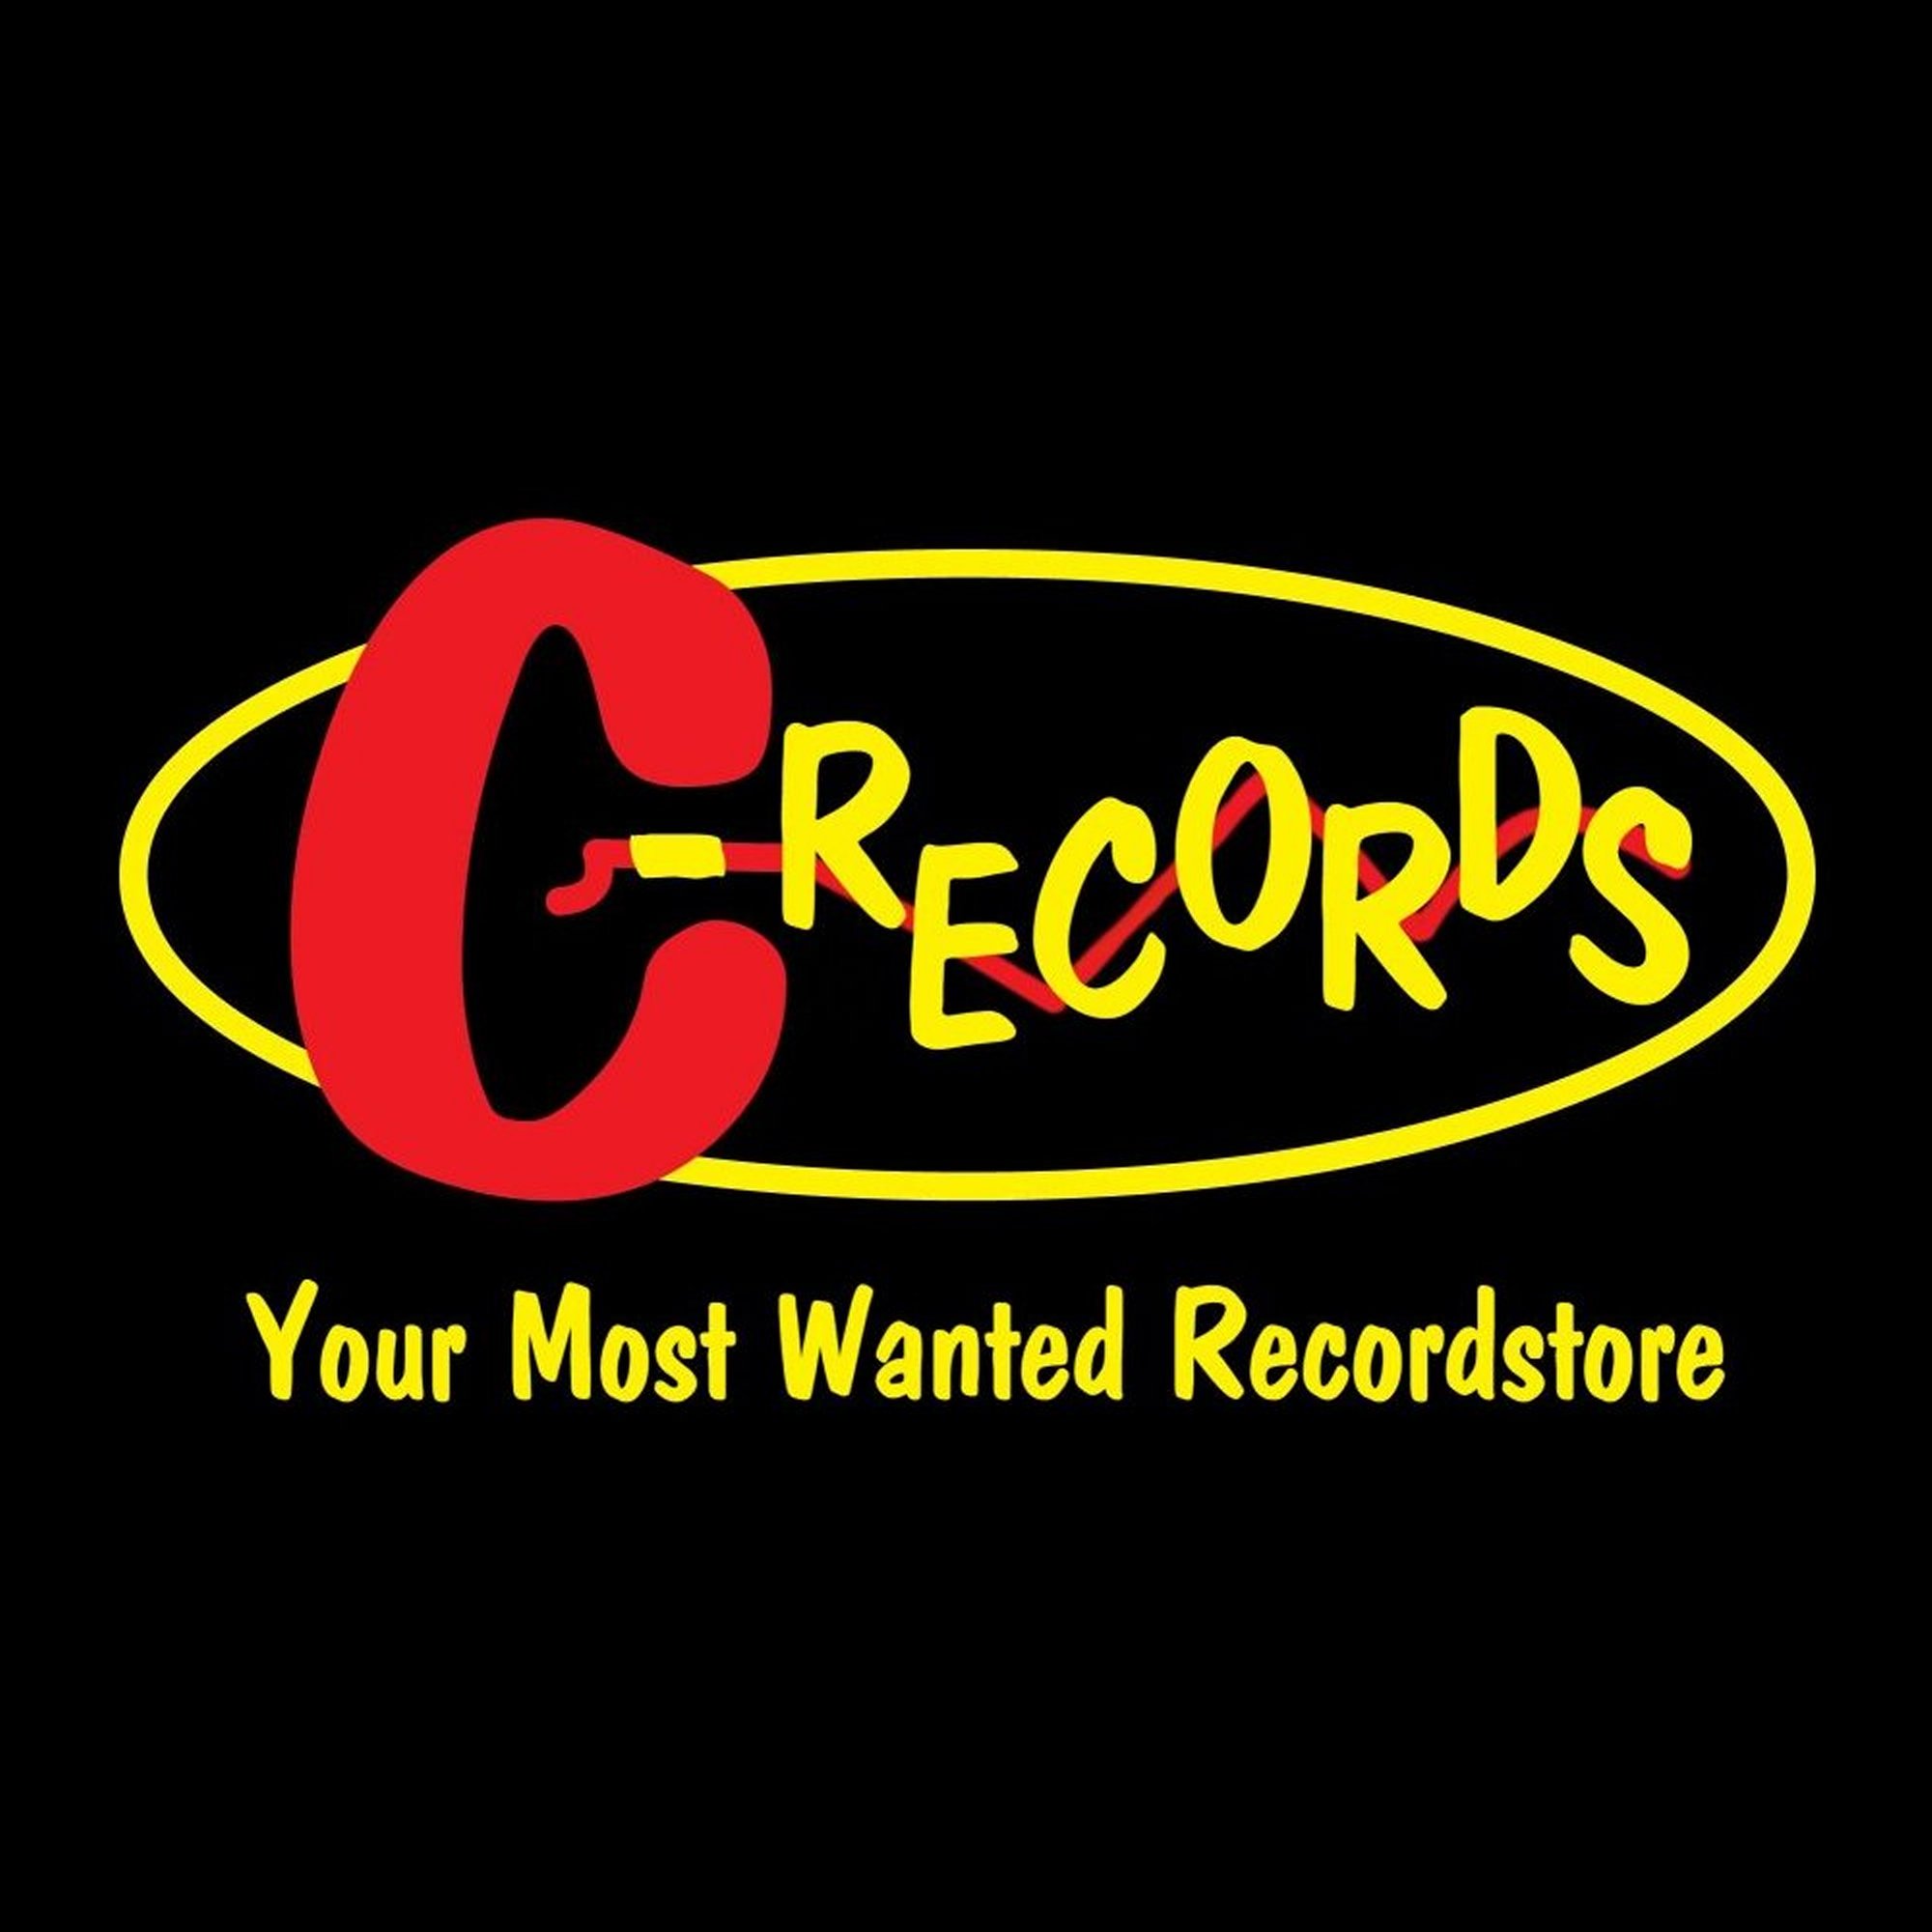 C-Records